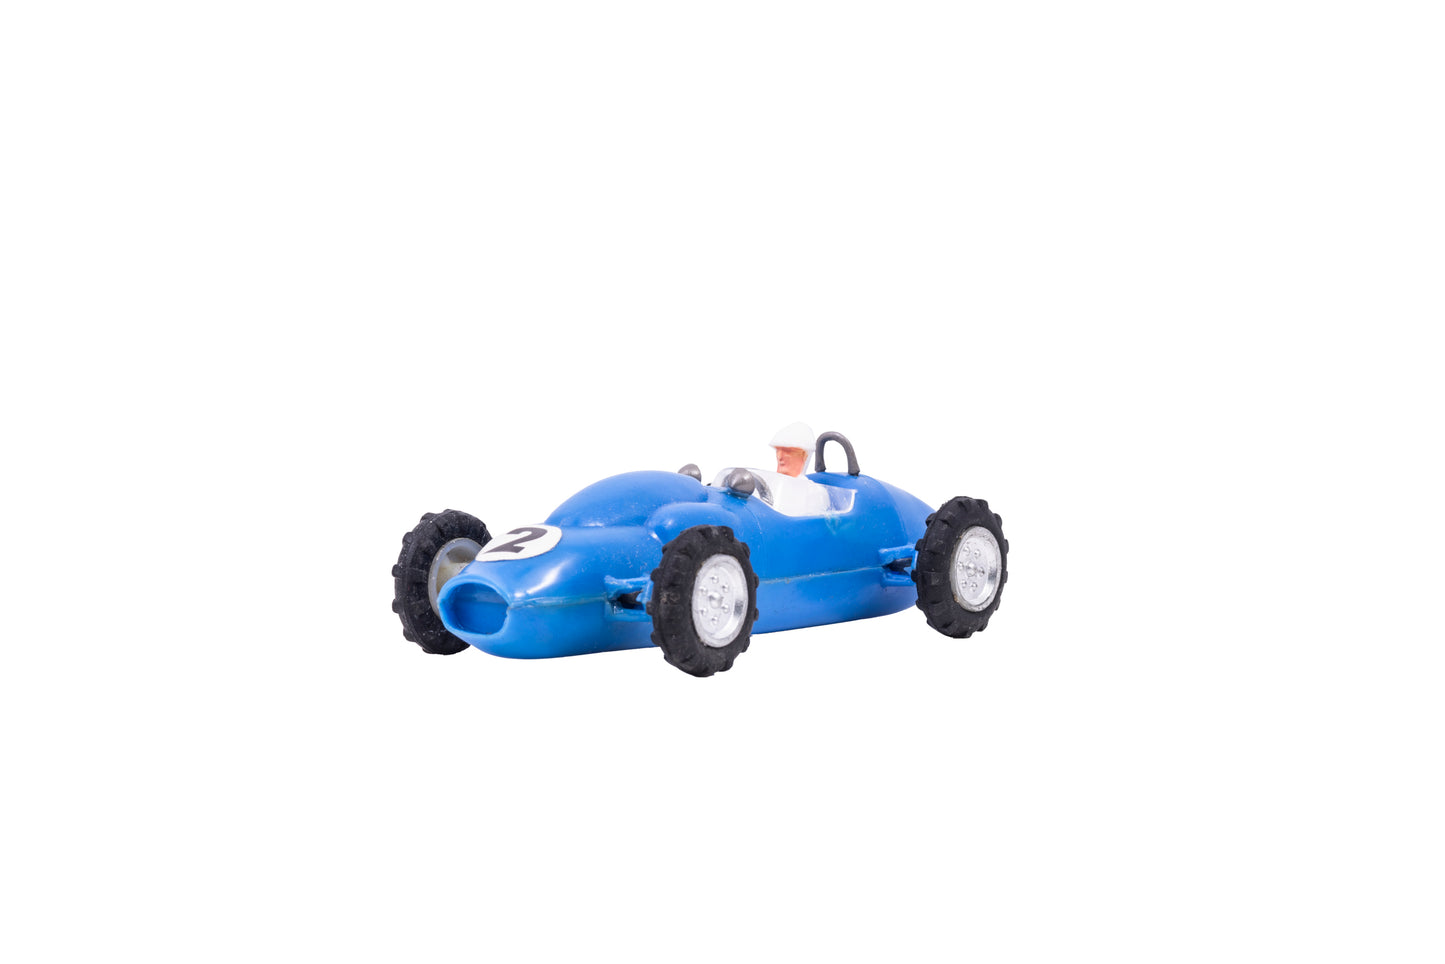 Ferguson Friction Racer Toy from Marx